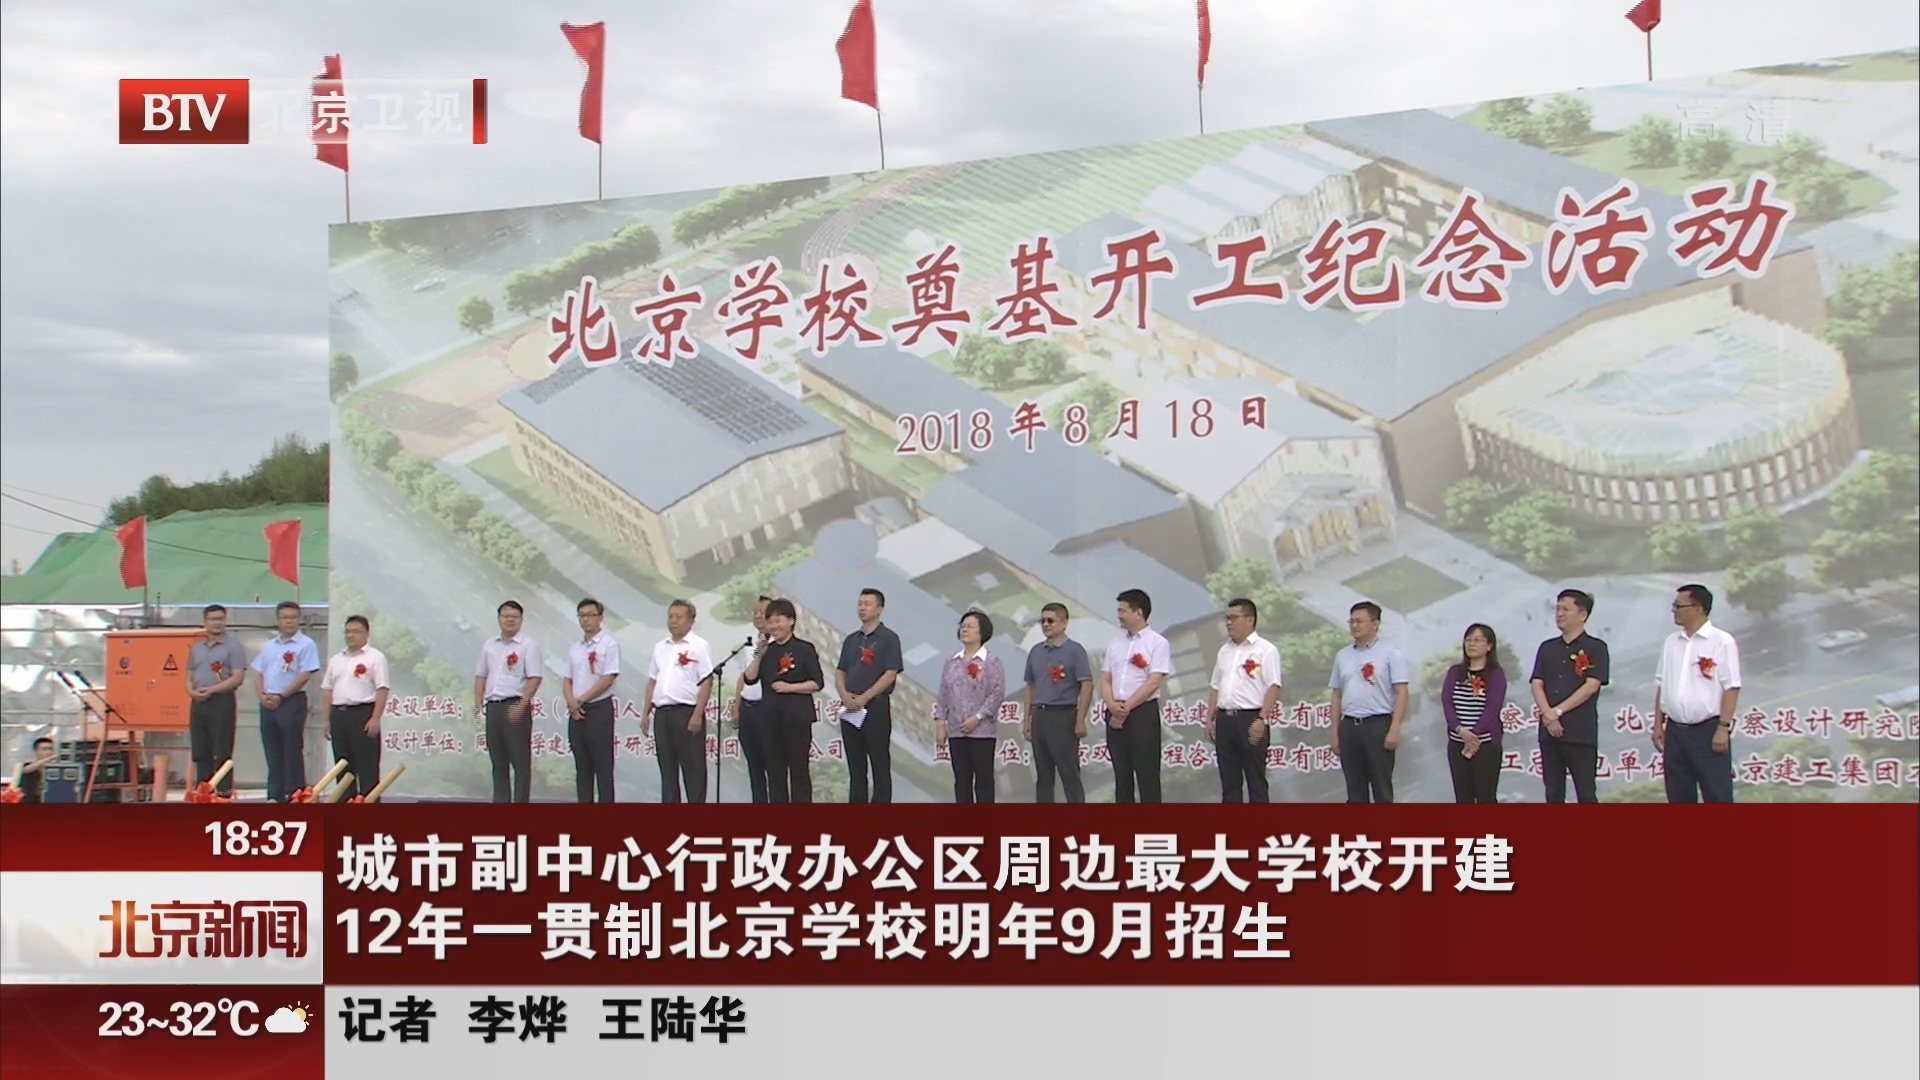 城市副中心行政办公区周边最大学校开建 12年一贯制北京学校明年9月招生